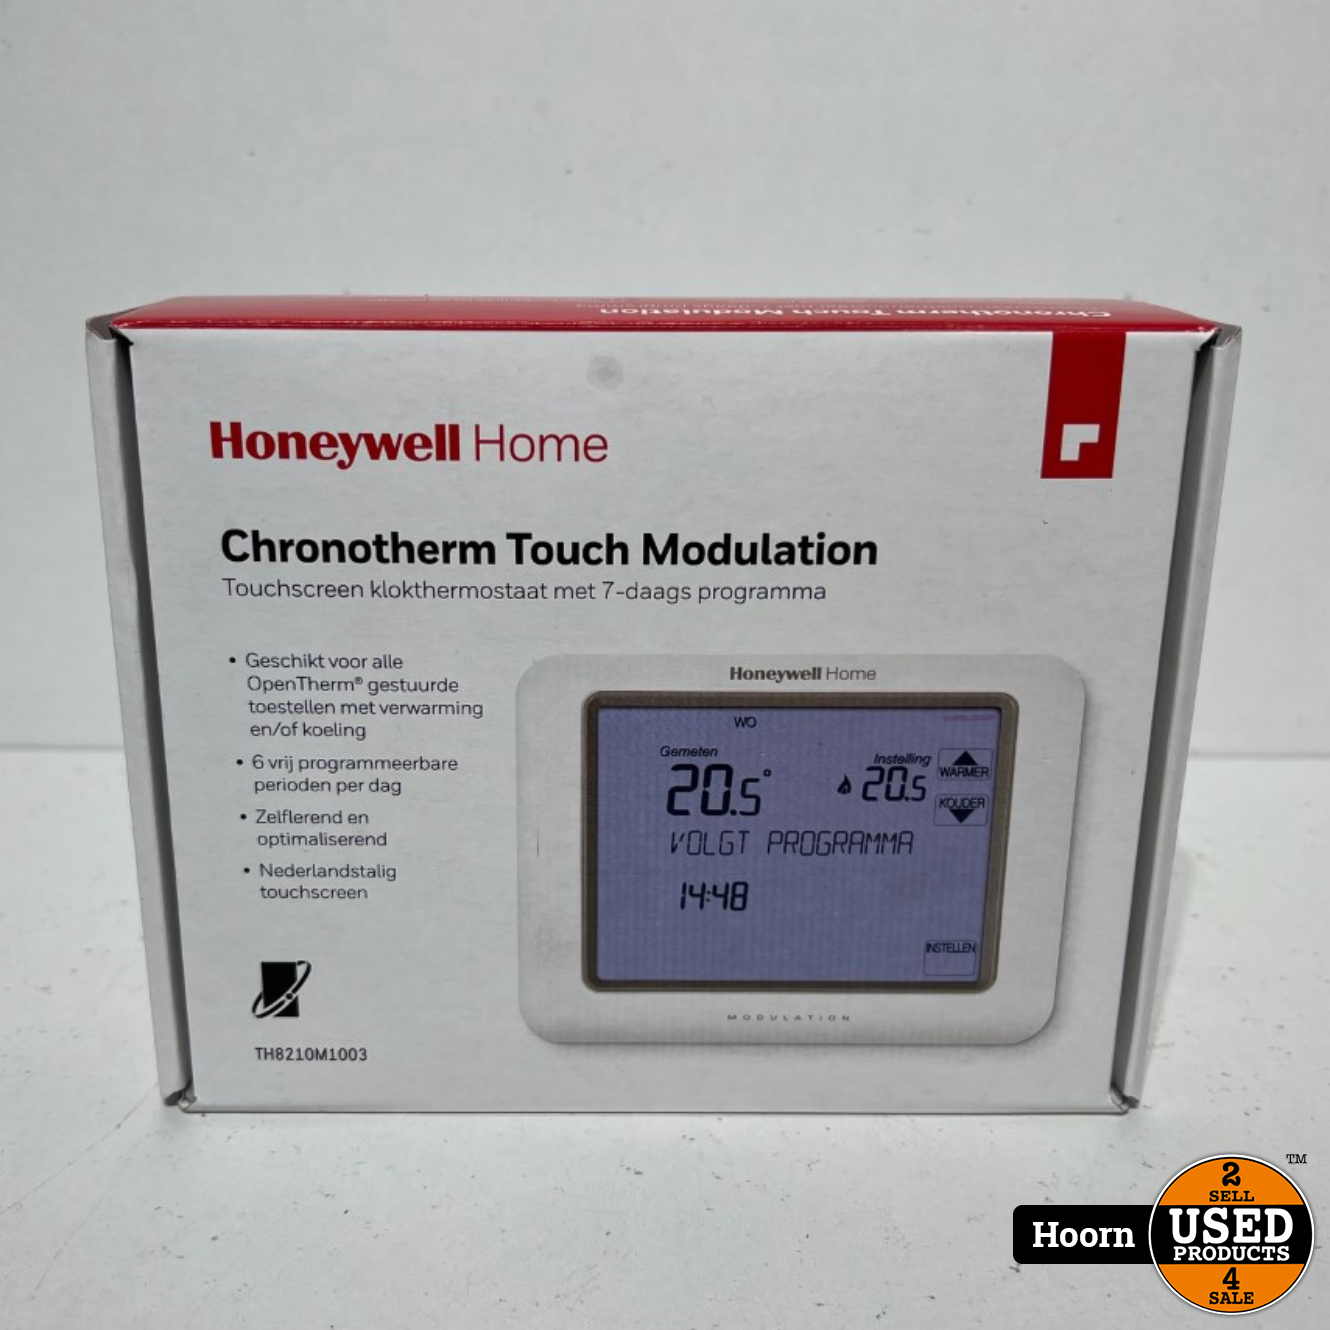 stapel reparatie lichten Honeywell TH8210M1003 Chronotherm Touch Modulation Touchscreen  Klokthermostaat Nieuw in Doos - Used Products Hoorn